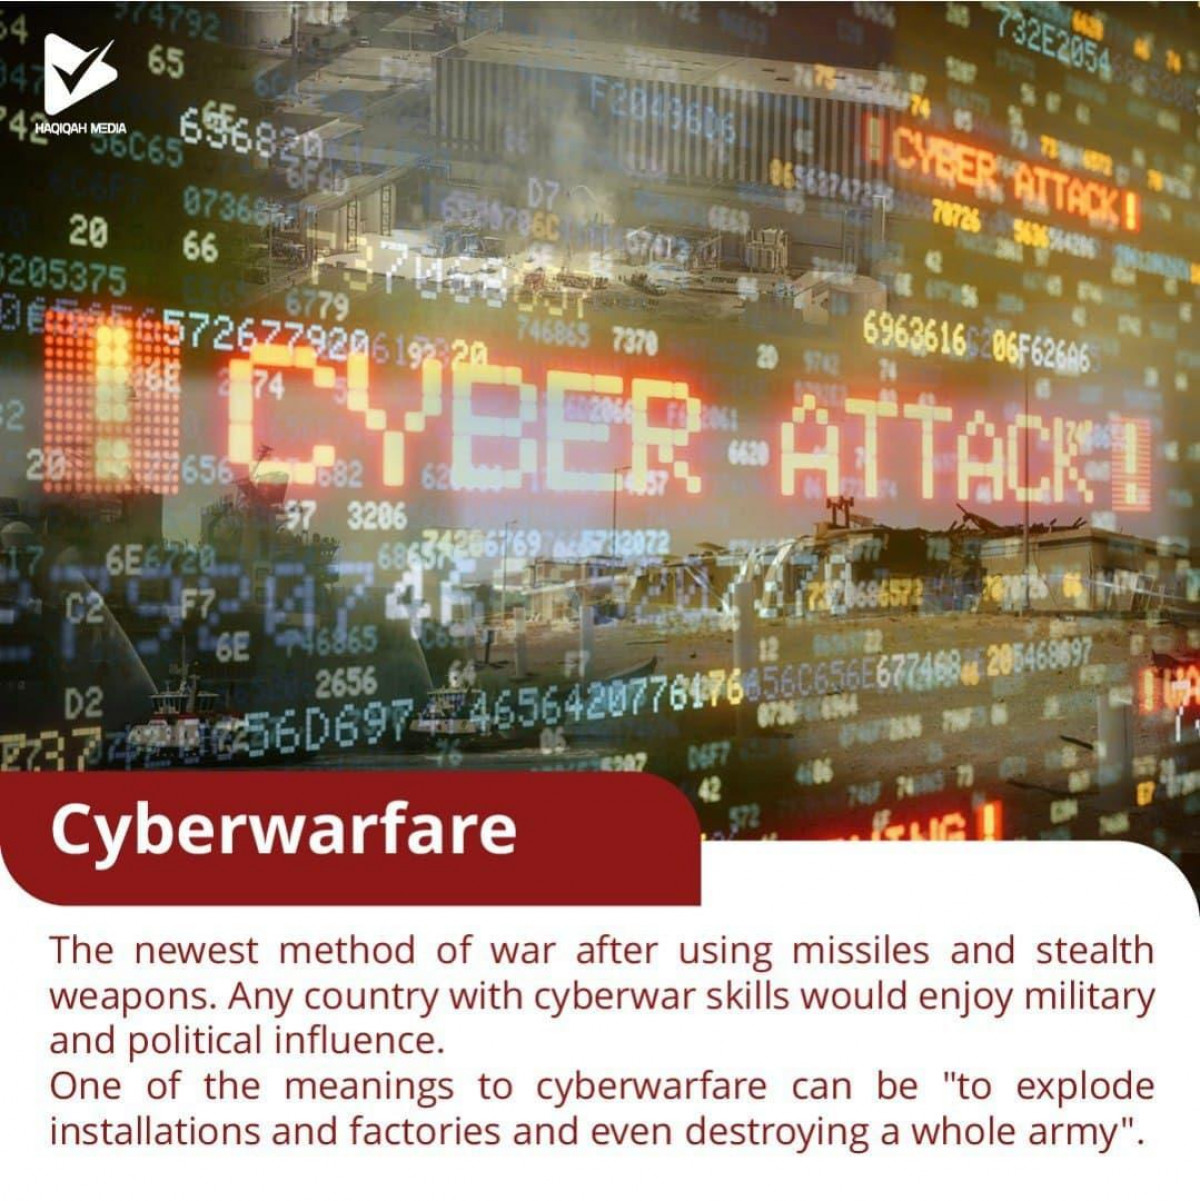 Cyberwarfare